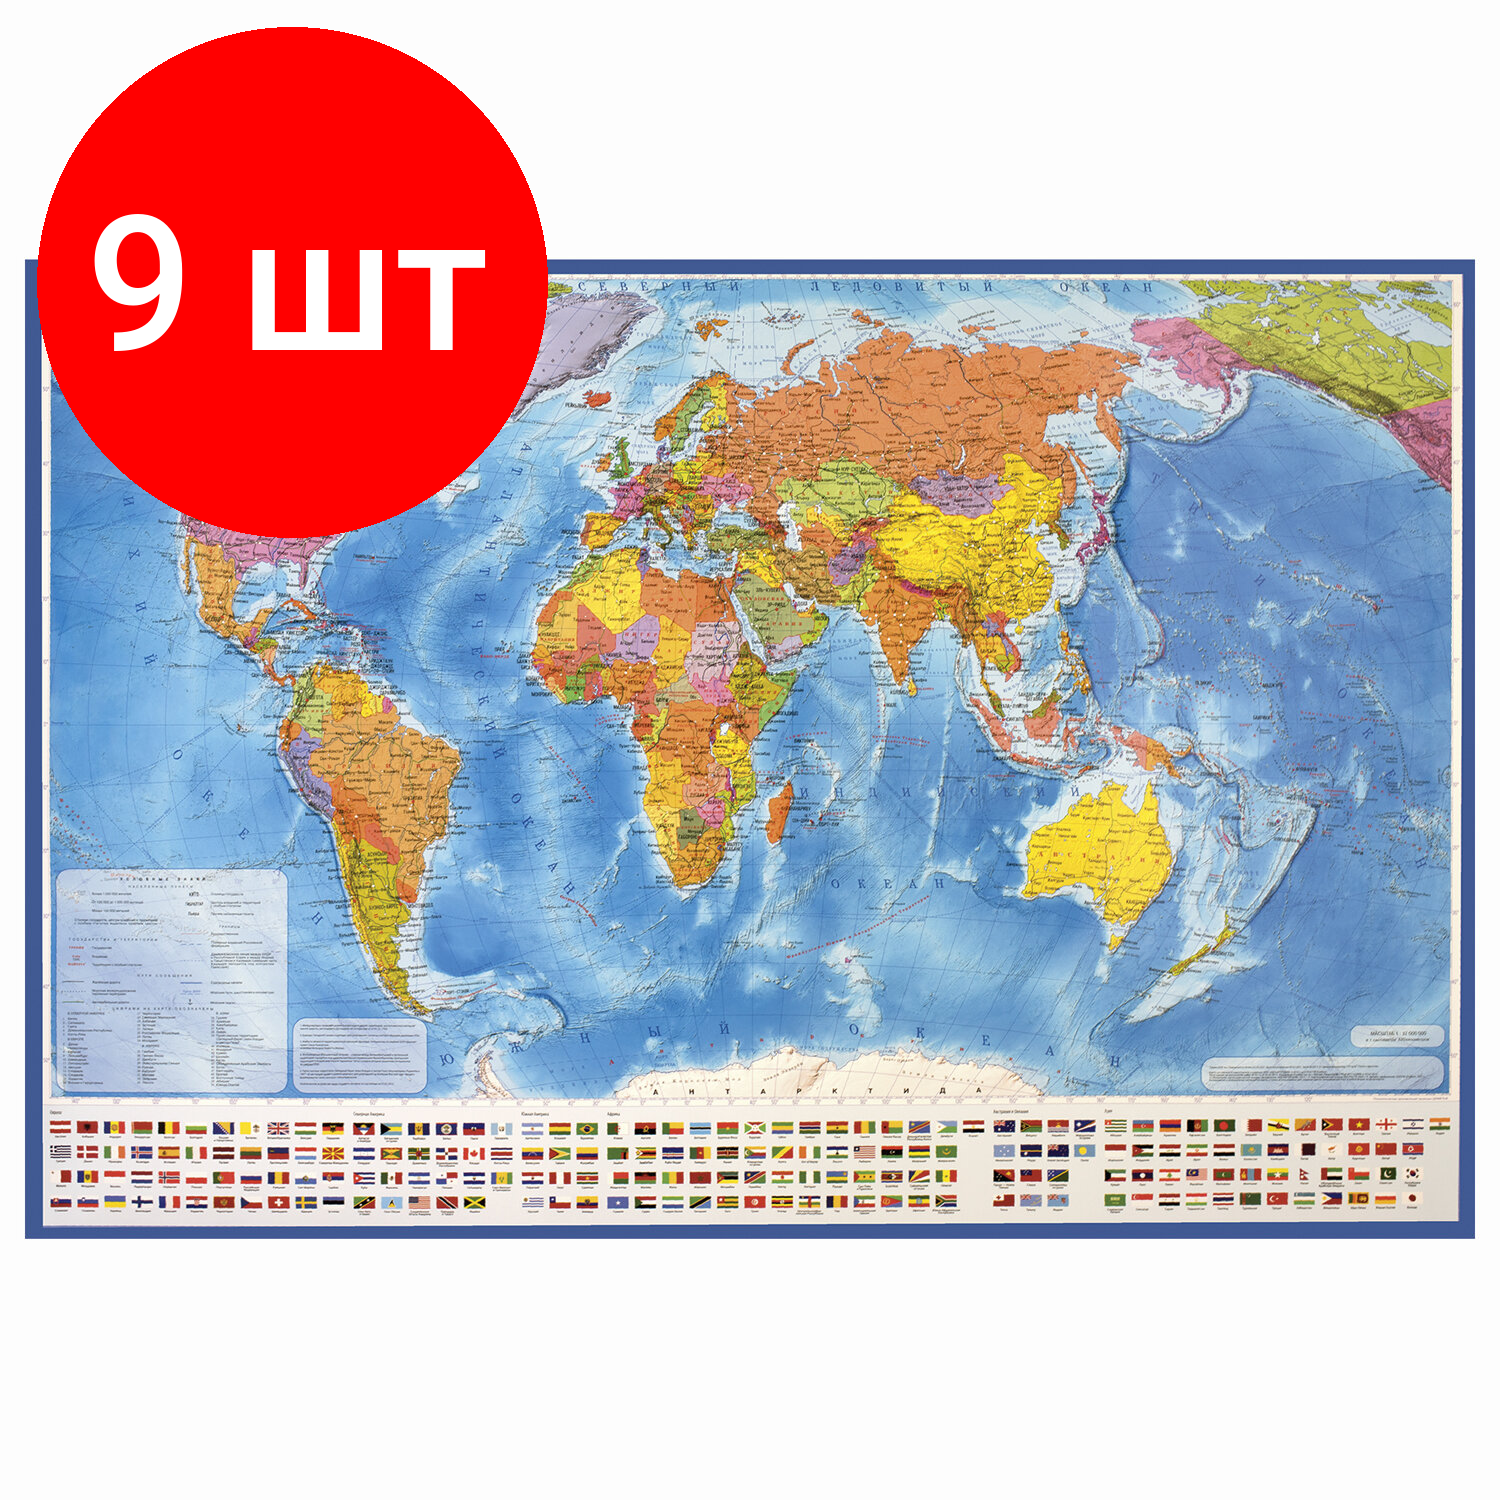 Комплект 9 шт, Карта мира политическая 101х70 см, 1:32М, с ламинацией, интерактивная, в тубусе, BRAUBERG, 112382